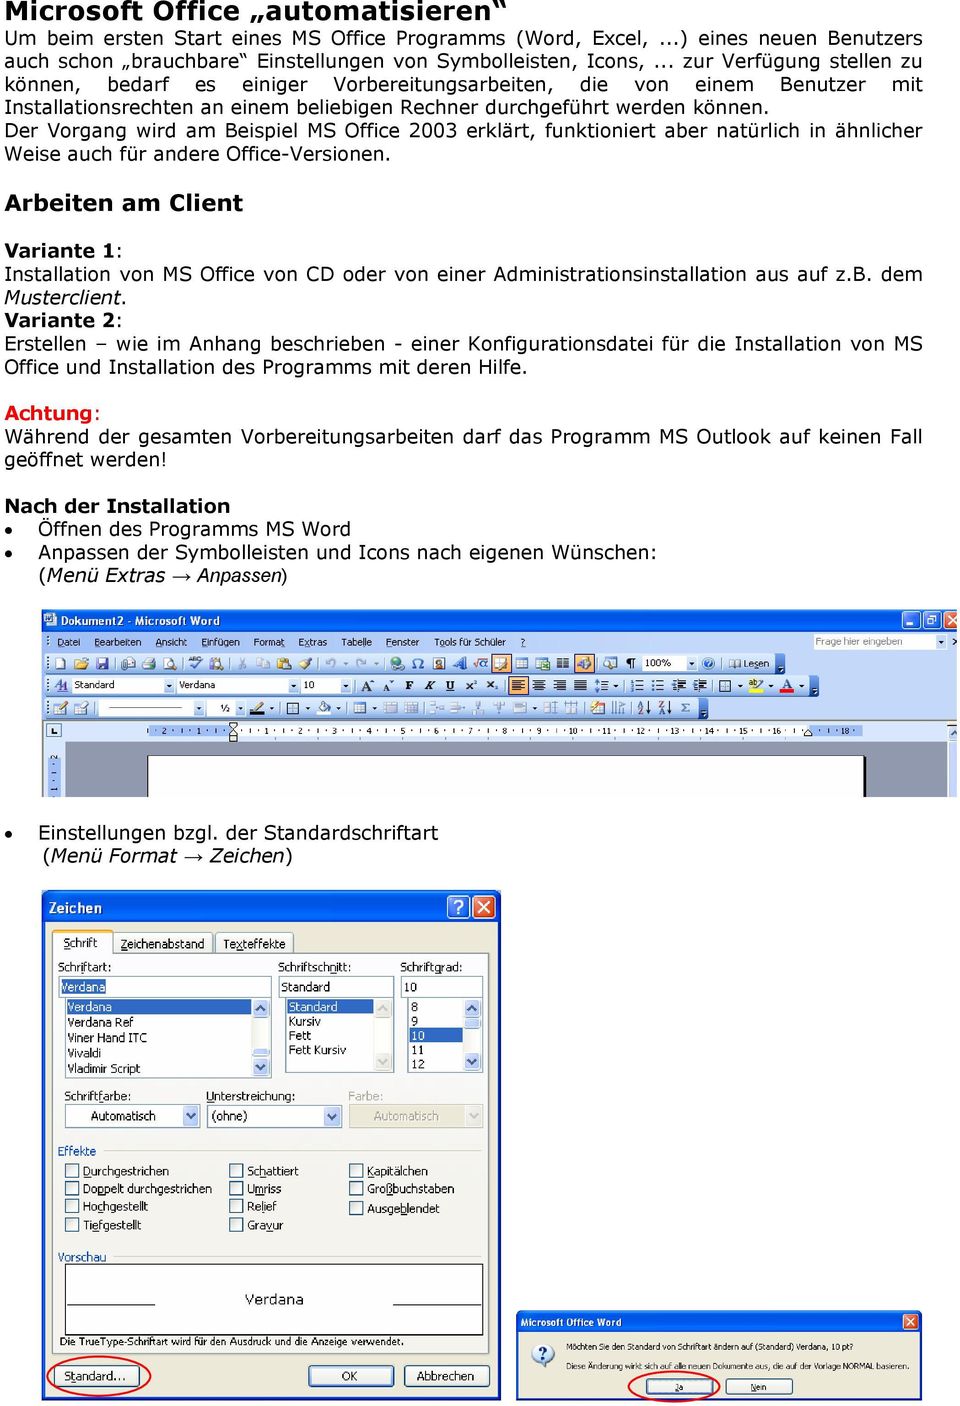 Der Vorgang wird am Beispiel MS Office 2003 erklärt, funktioniert aber natürlich in ähnlicher Weise auch für andere Office-Versionen.